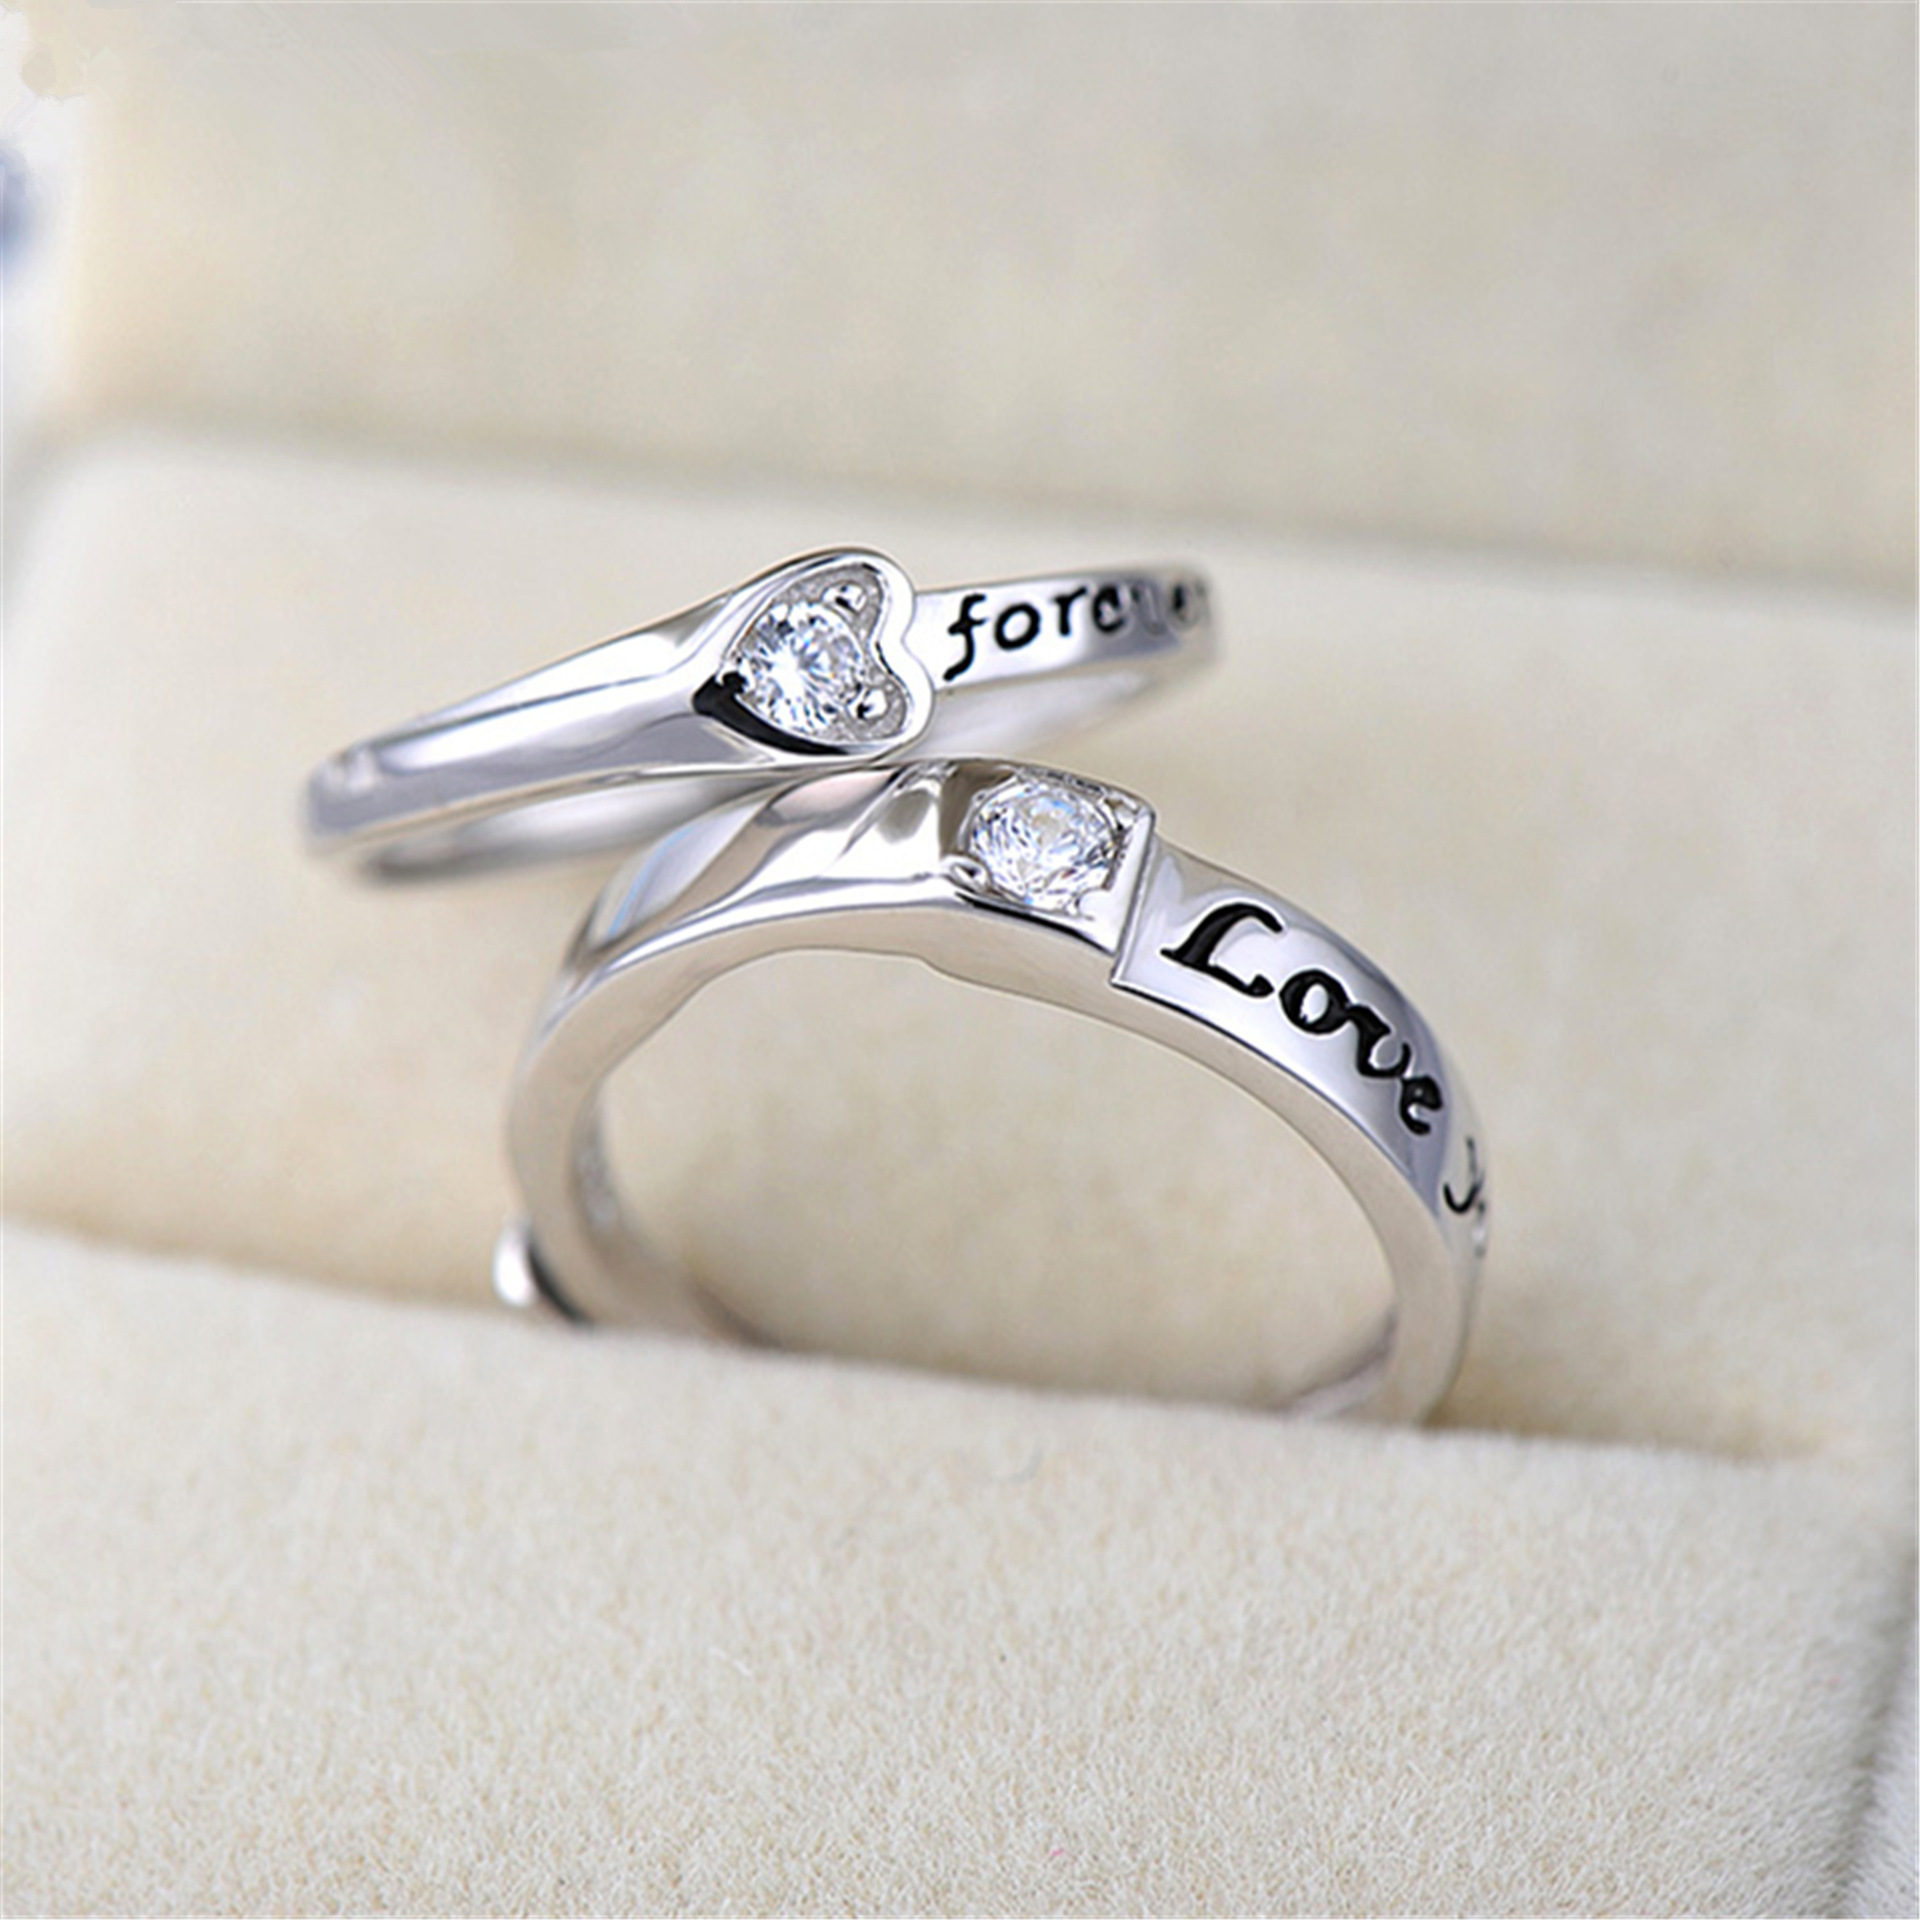 Nhẫn đôi nhẫn cặp thời trang Forever đính đá cực cool NC07